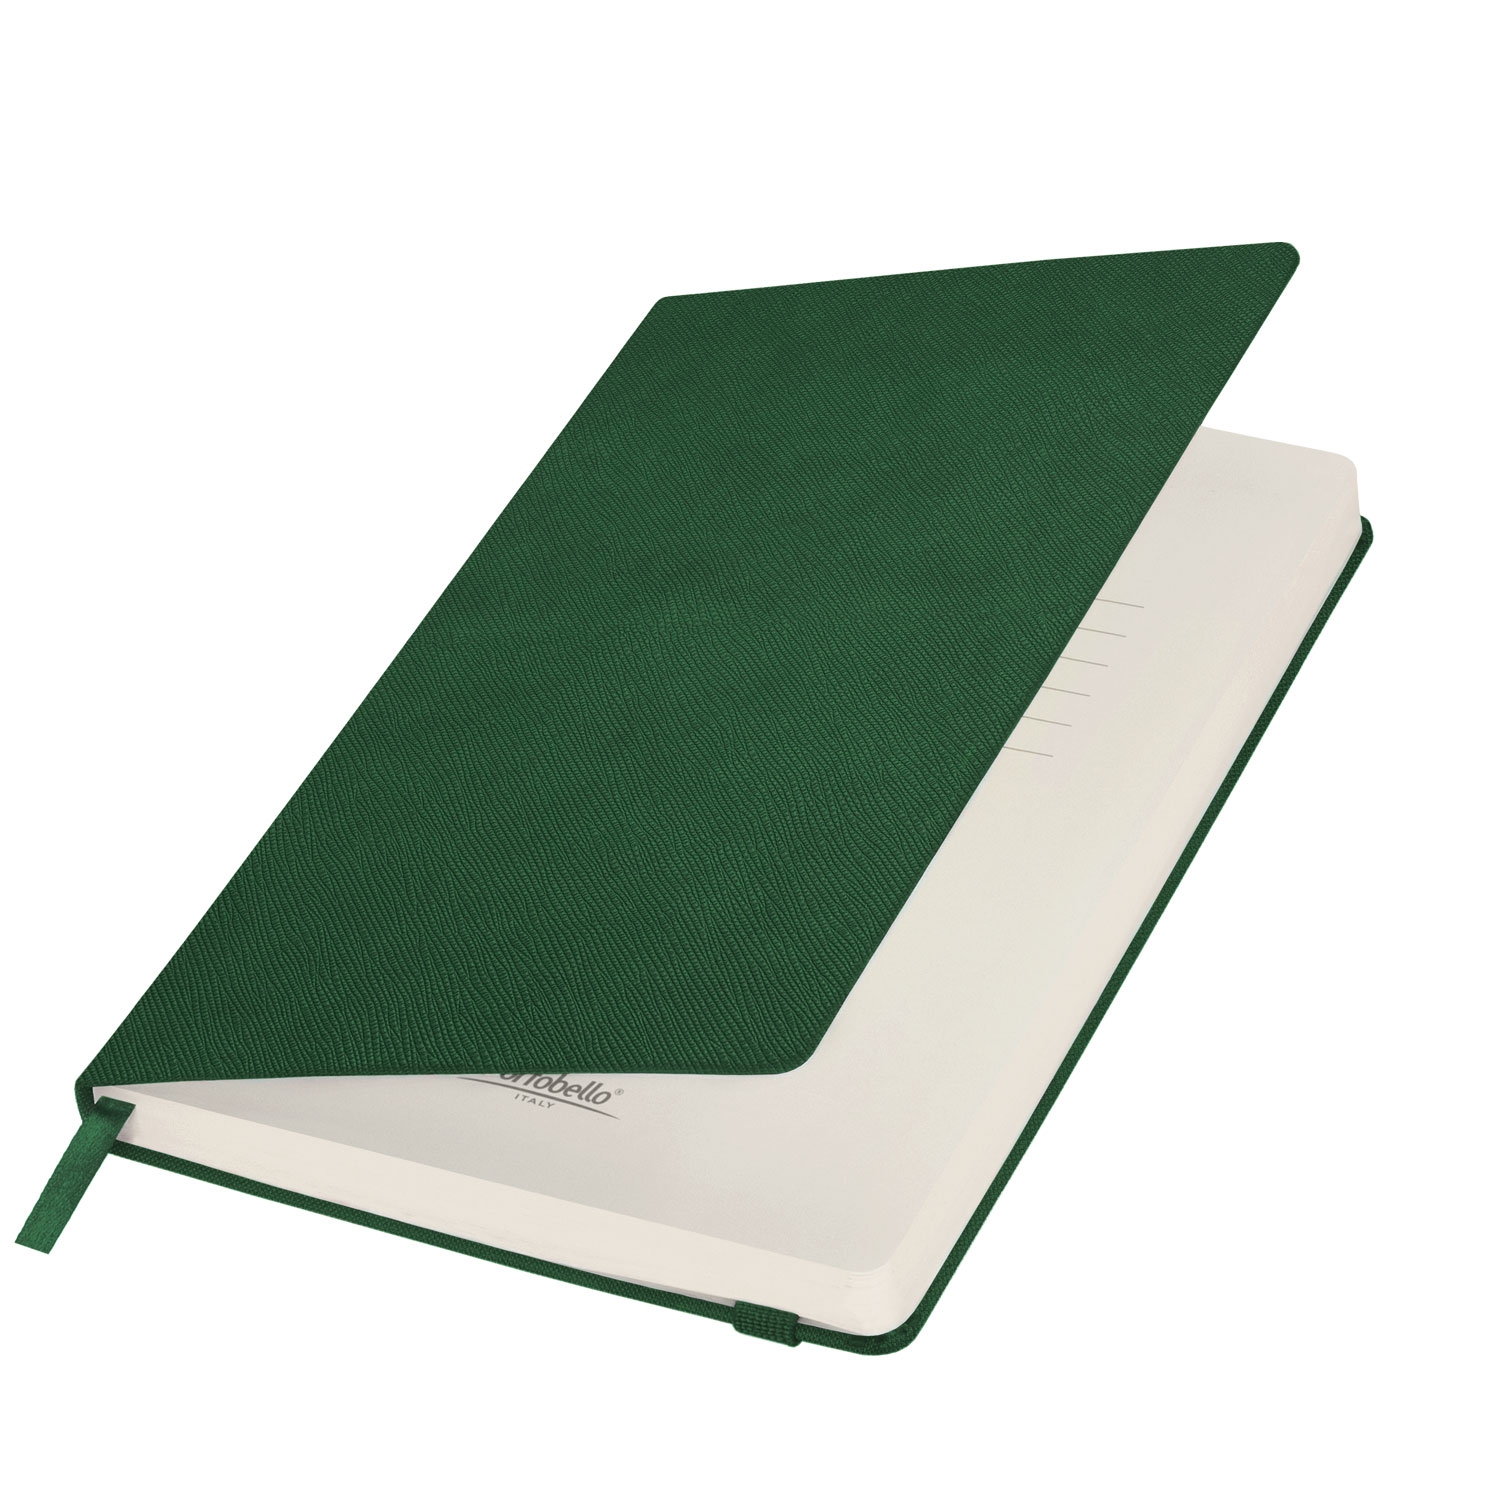 Ежедневник Summer time BtoBook недатированный, зеленый (без упаковки, без стикера), зеленый